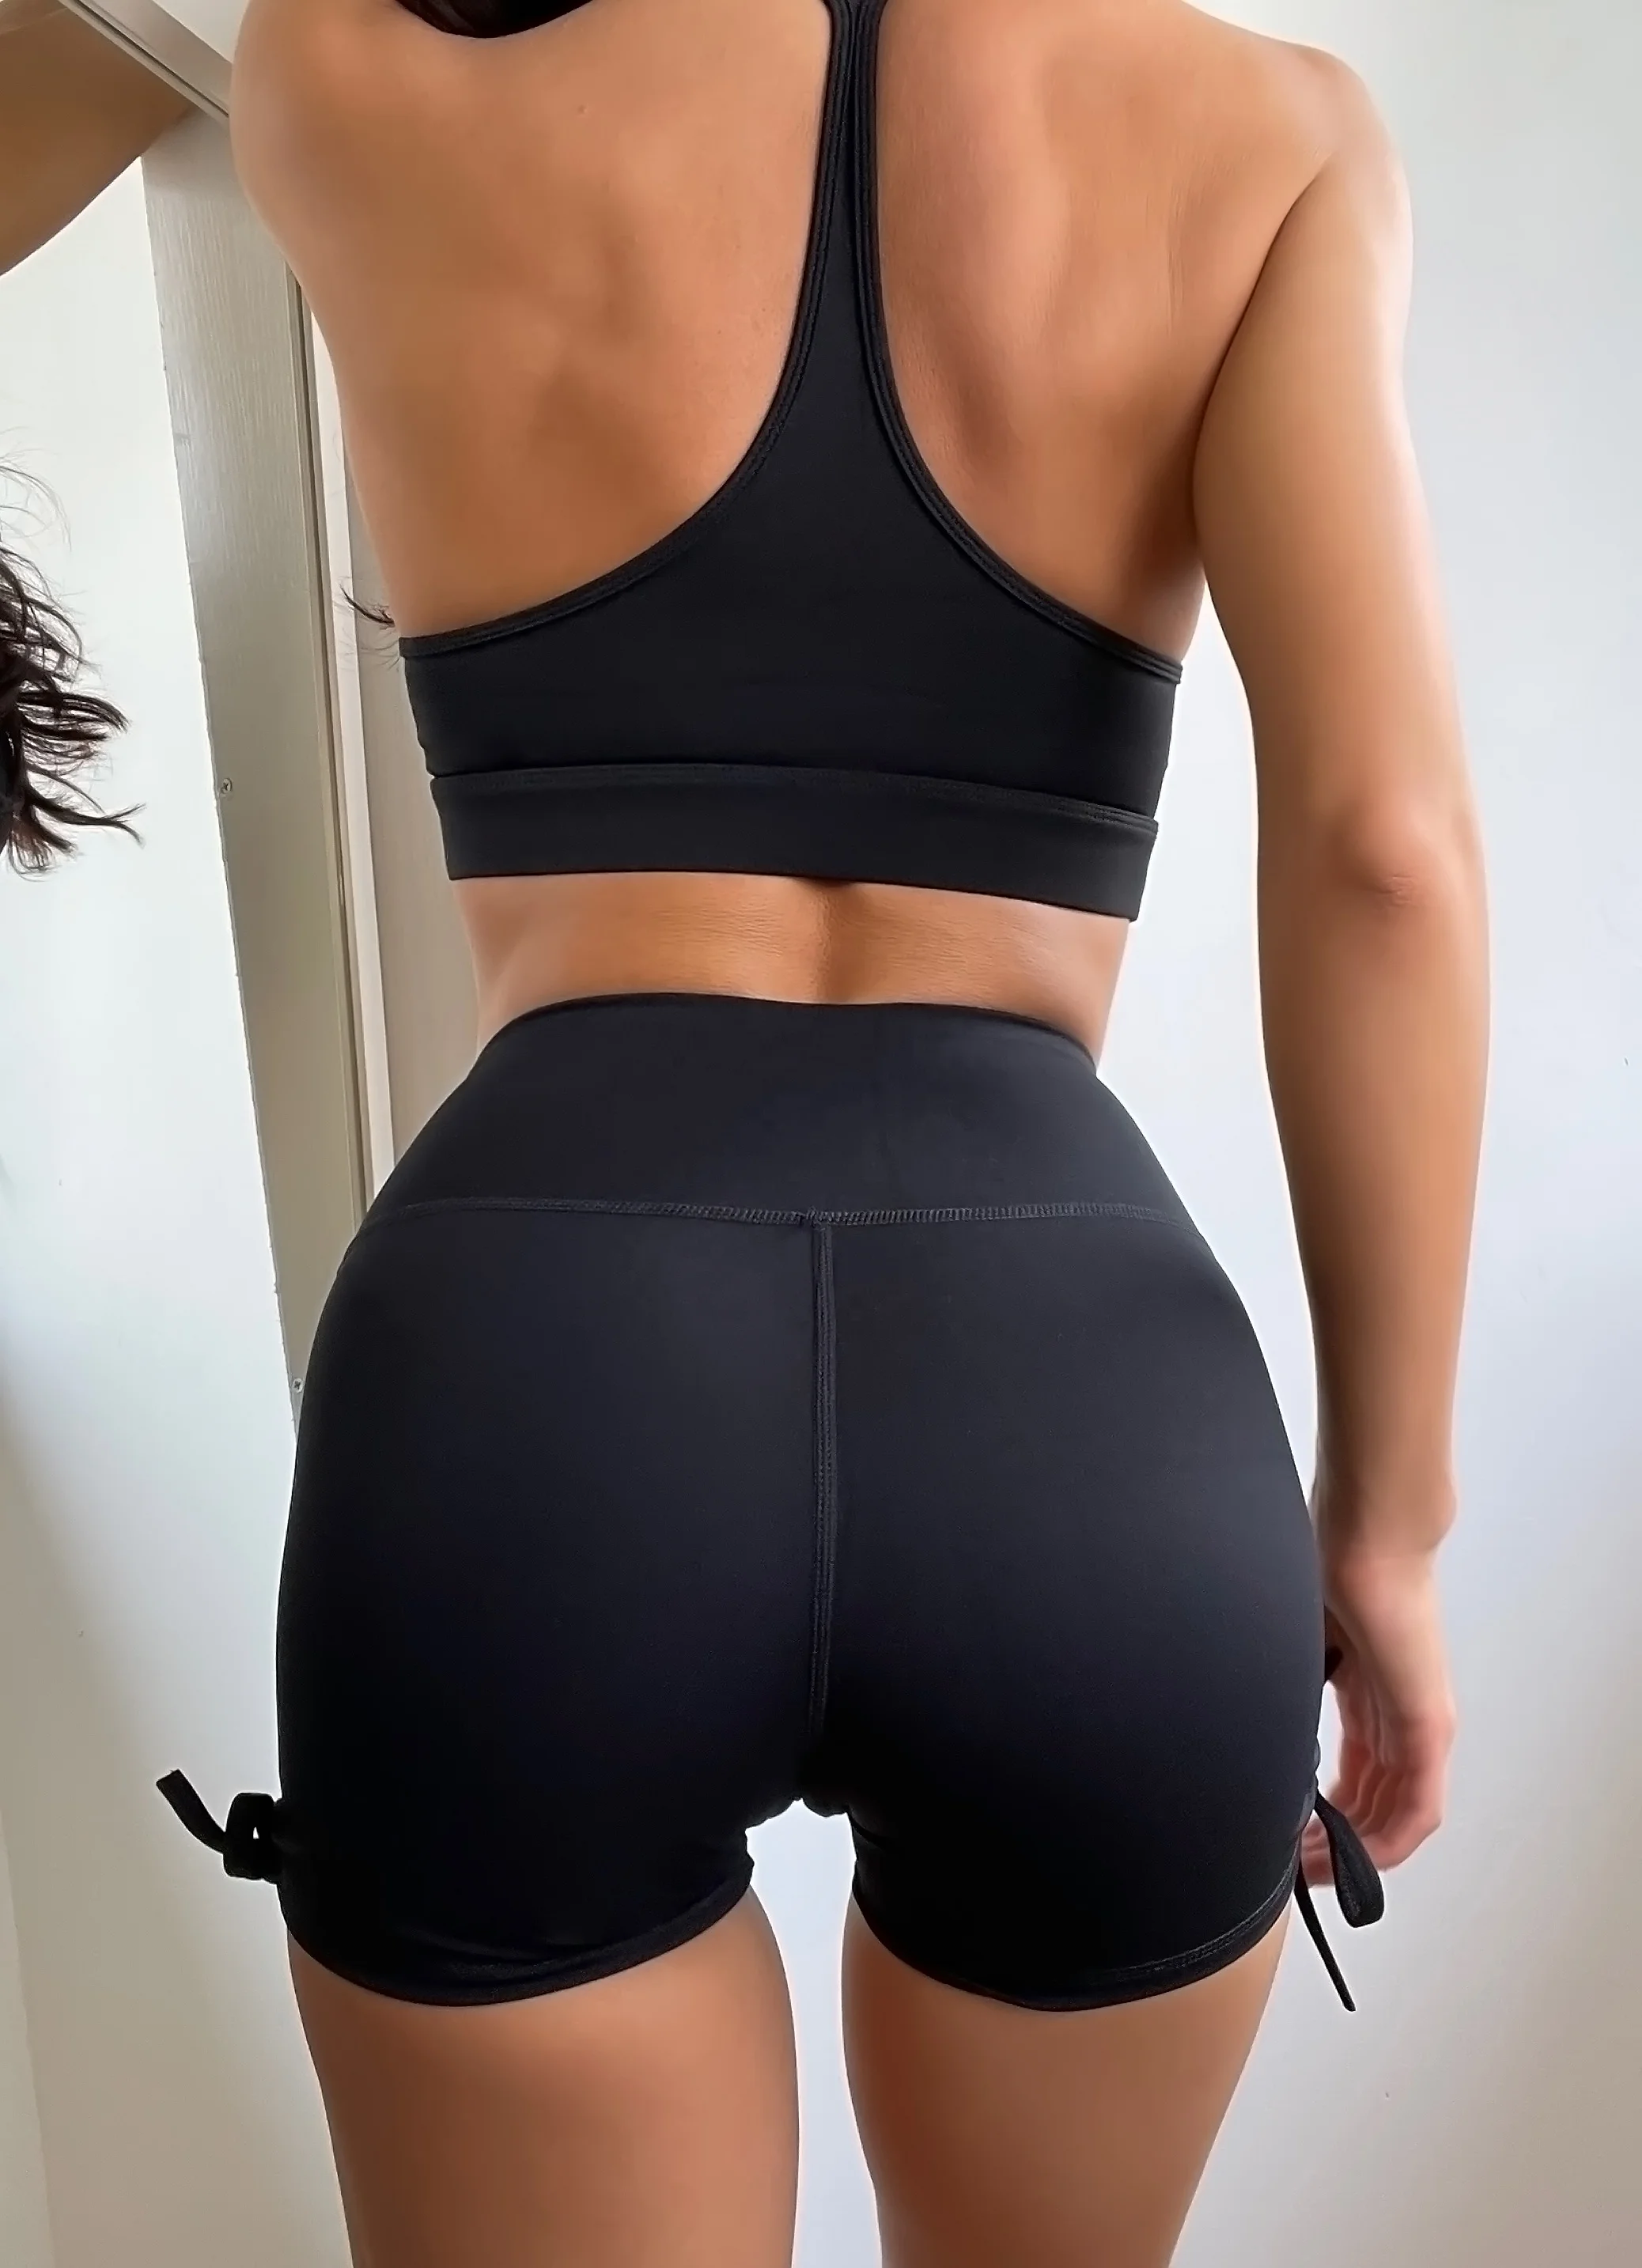 Ptsports 2021 новый дизайн бюстгальтер и шорты Комплект Быстросохнущий материал одежда для фитнеса летние модные цвета для девочек набор для йоги